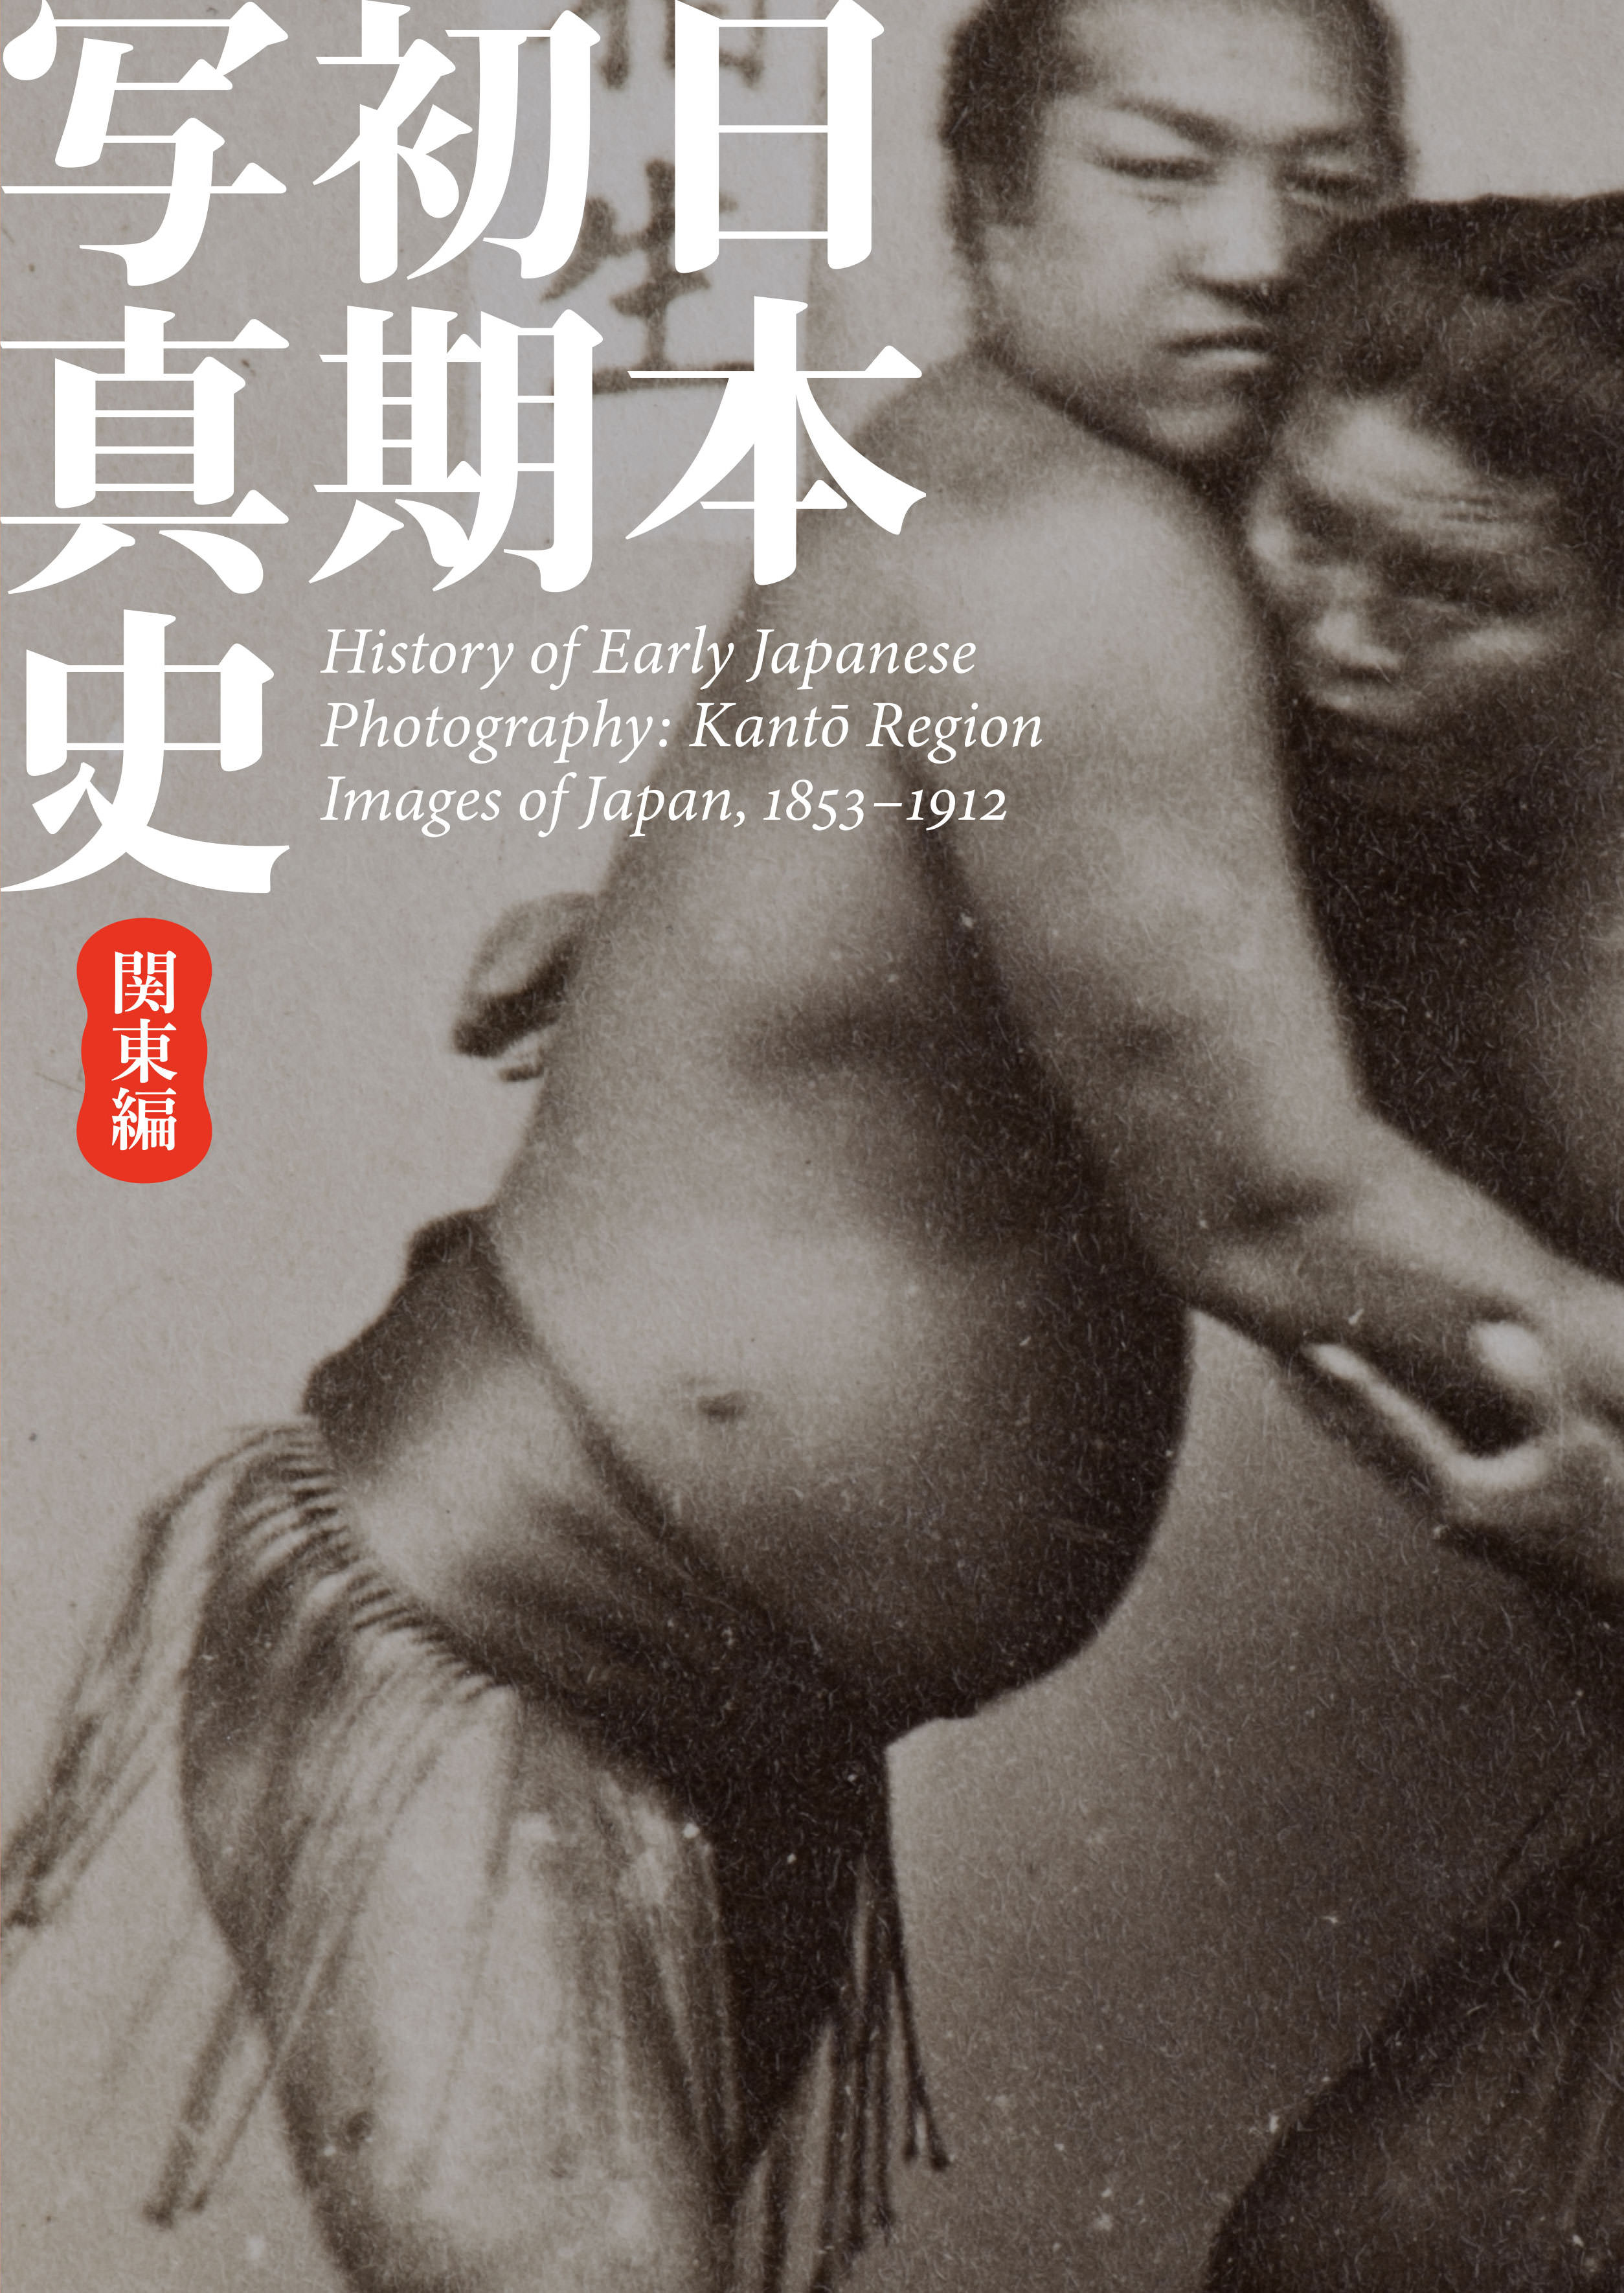 日本初期写真史 関東編 — 幕末明治を撮る History of Early Japanese Photography: Kanto Region Images of Japan, 1853–1912 - 東京都写真美術館 / TOP MUSEUM